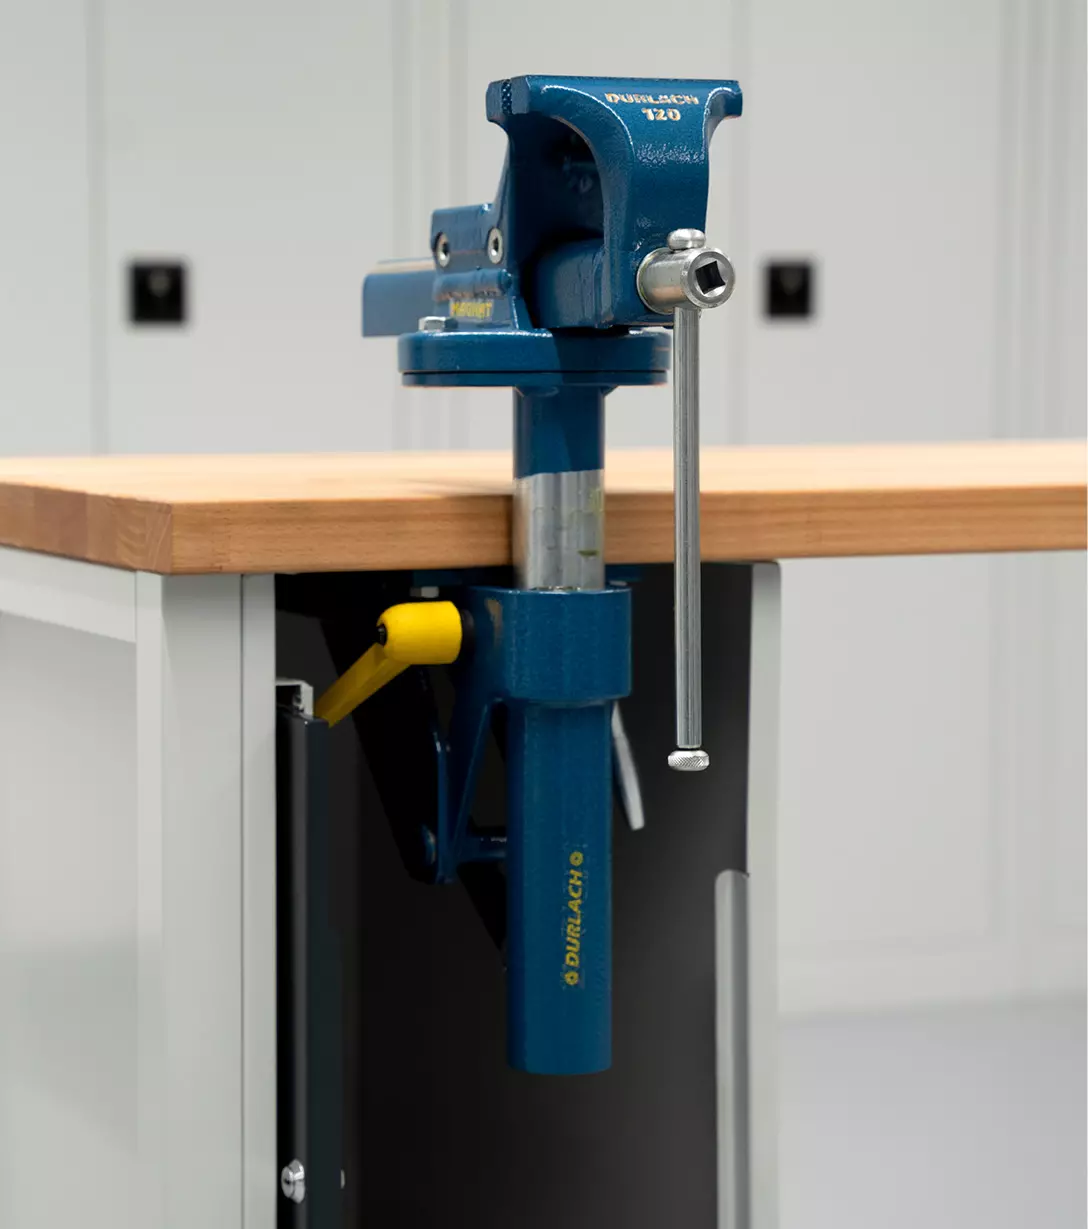 Höhenverstellbarer Schraubstock in Blau, montiert an einer Werkbank mit Holzplatte.